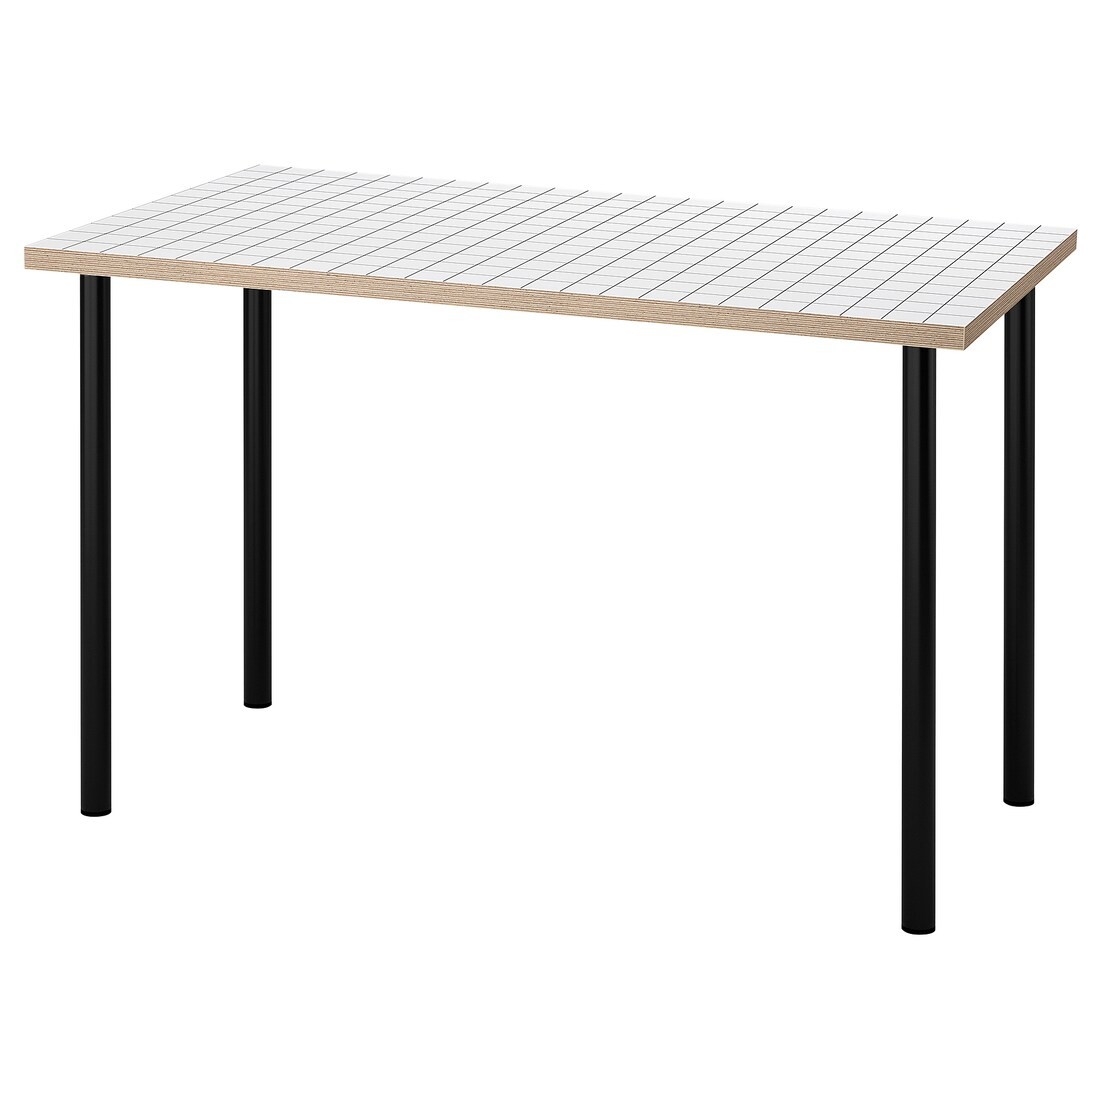 IKEA LAGKAPTEN ЛАГКАПТЕН / ADILS АДИЛЬС Письменный стол, белый антрацит / черный, 120x60 см 79508406 795.084.06